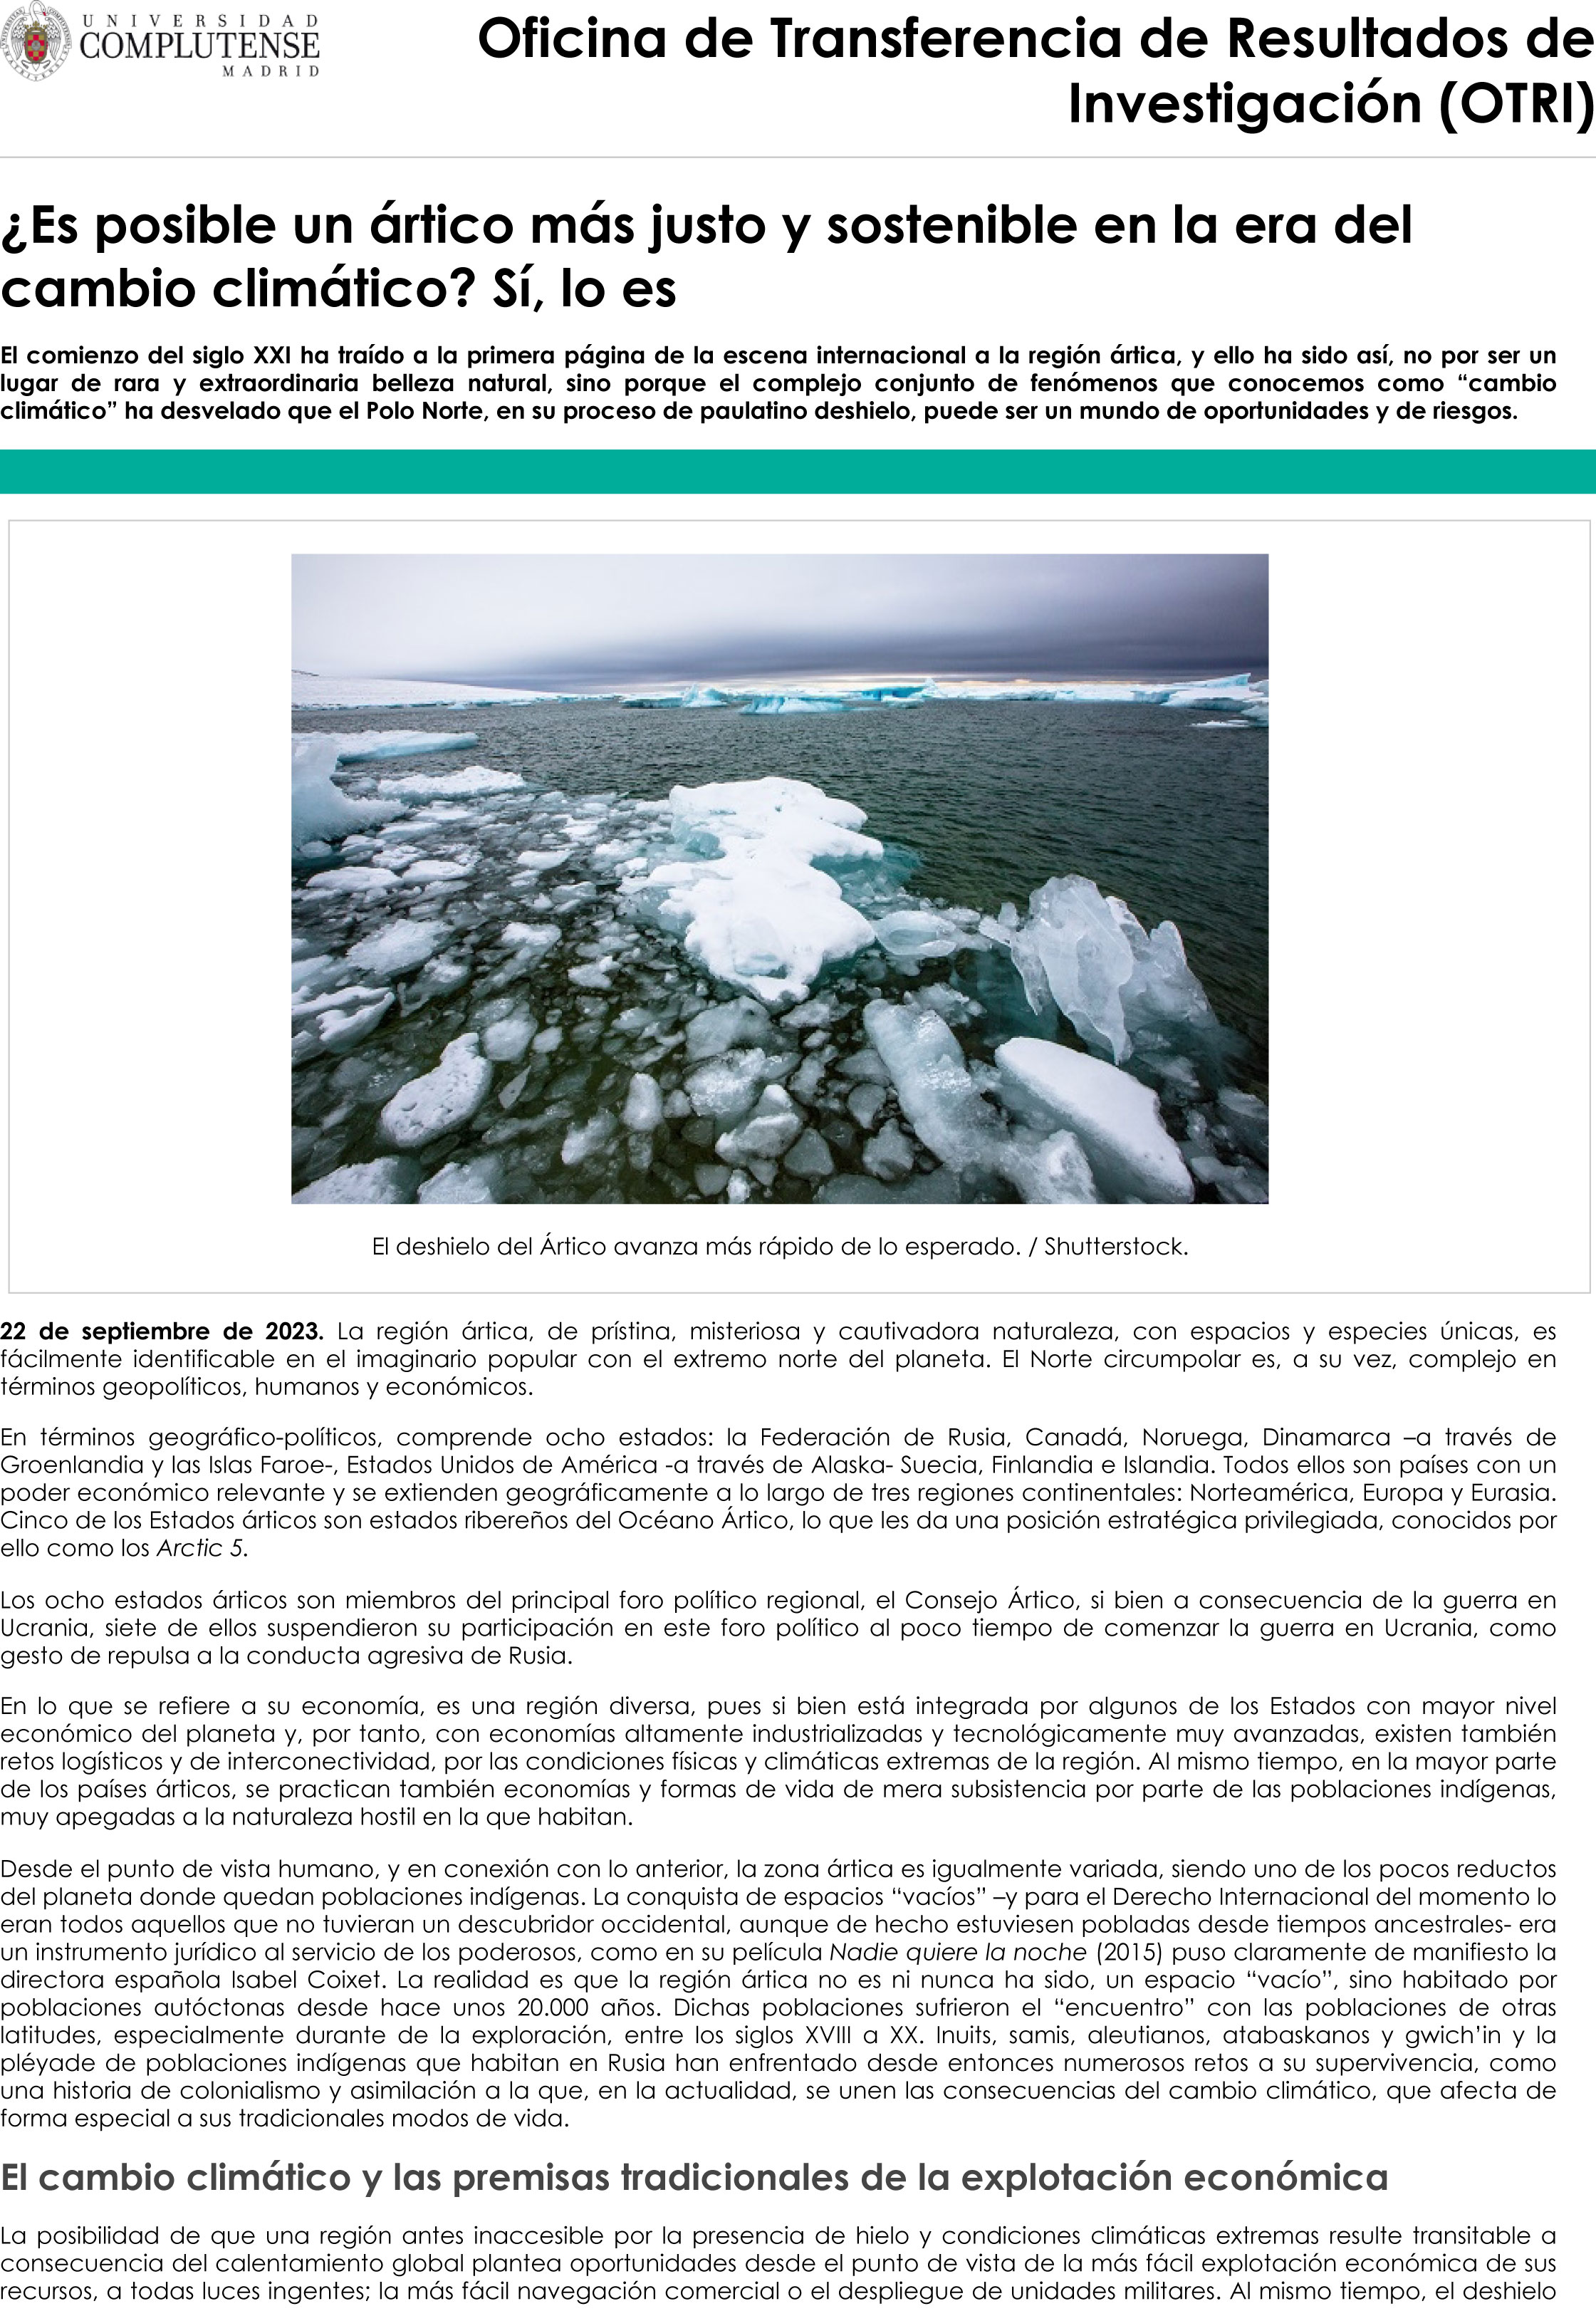 ¿es-posible-un-ártico-más-justo-y-sostenible-en-la-era-del-cambio-climático_-sí,-lo-es-_-oficina-de-transferencia-de-resultados-de-investigación-1